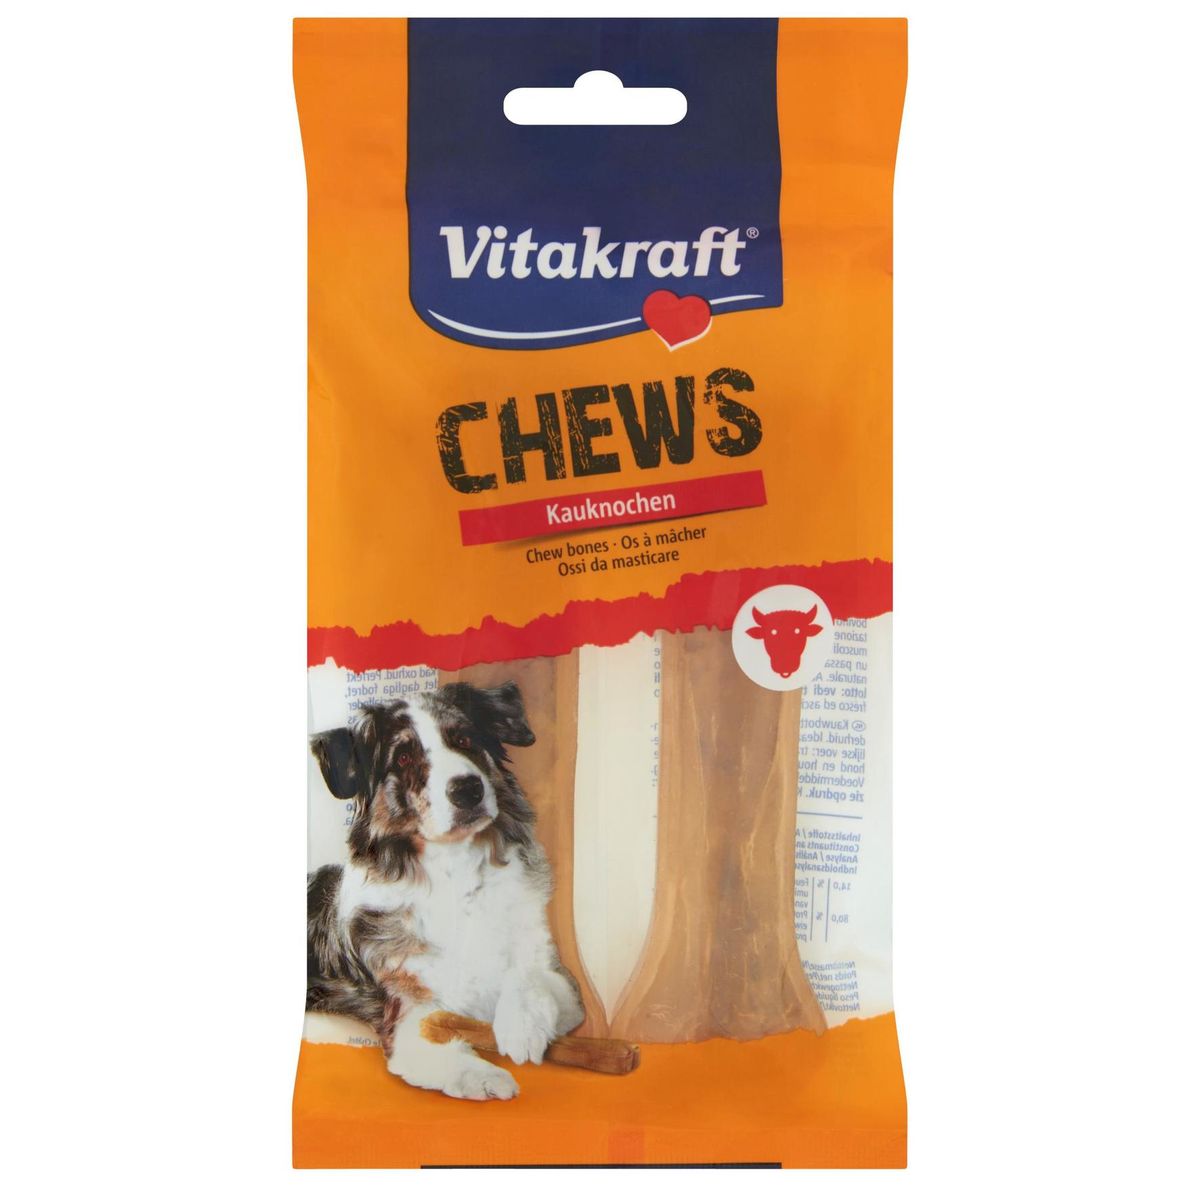 Vitakraft Chews Chew Bones 2 Stuks 125 g